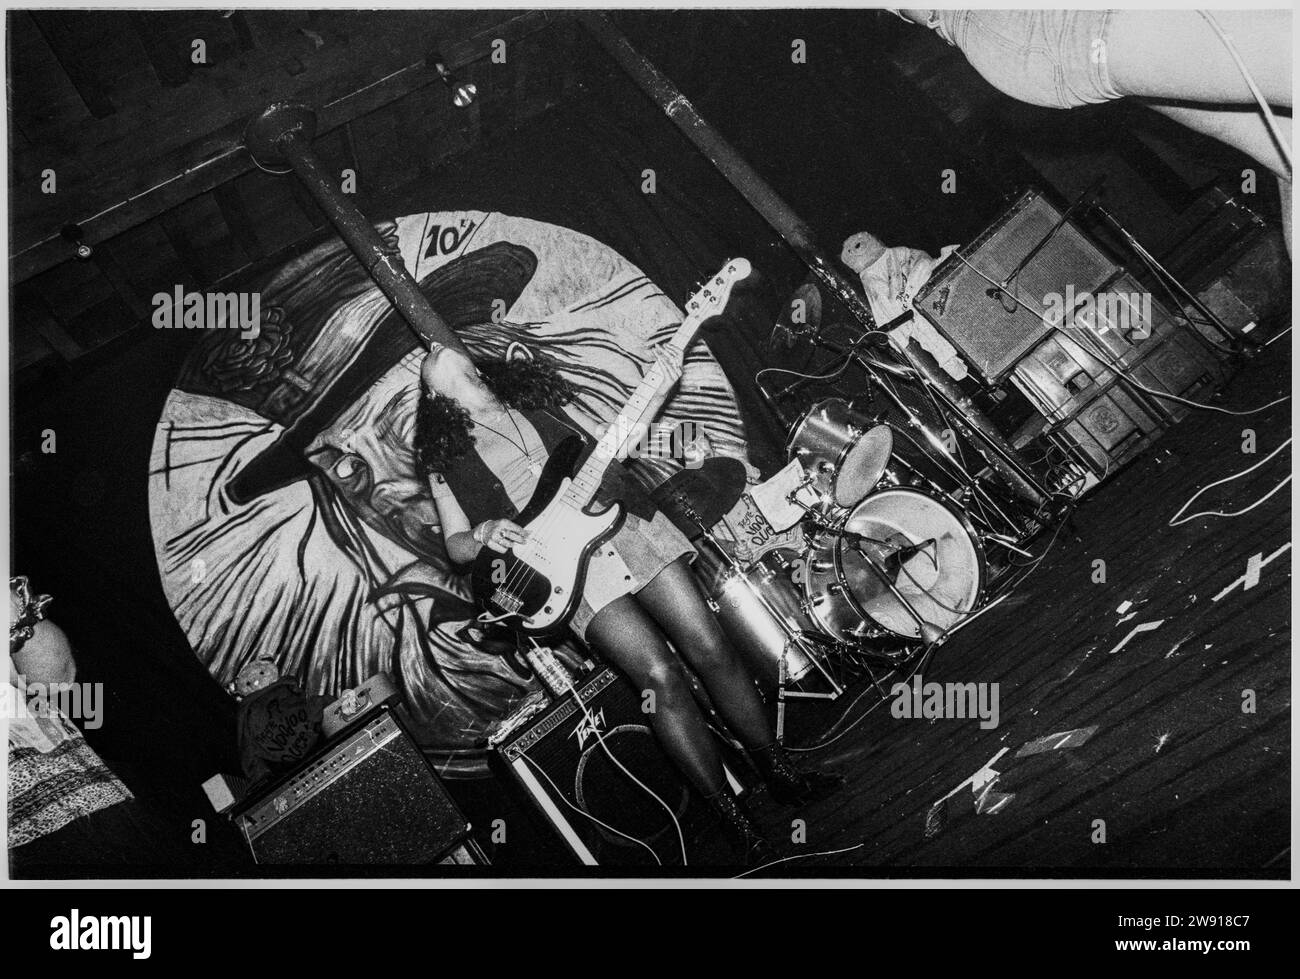 VOODOO QUEENS, BRISTOL FLEECE, 1993: El bajista de Anjula Bhaskar con The Voodoo Queens tocan Bristol Fleece y Firkin en Bristol, Inglaterra, Reino Unido el 28 de julio de 1993. Foto: Rob Watkins. INFORMACIÓN DE LA BANDA: The Voodoo Queens, una banda británica de indie punk formada a principios de los 90, fue dirigida por Anjali Bhatia. Su música enérgica y feminista, incluyendo el riotous single 'Supermodel-superficial', trajo una mezcla única de punk y pop, convirtiéndolos en una presencia notable en la escena de música alternativa de Riot Grrrl. Foto de stock